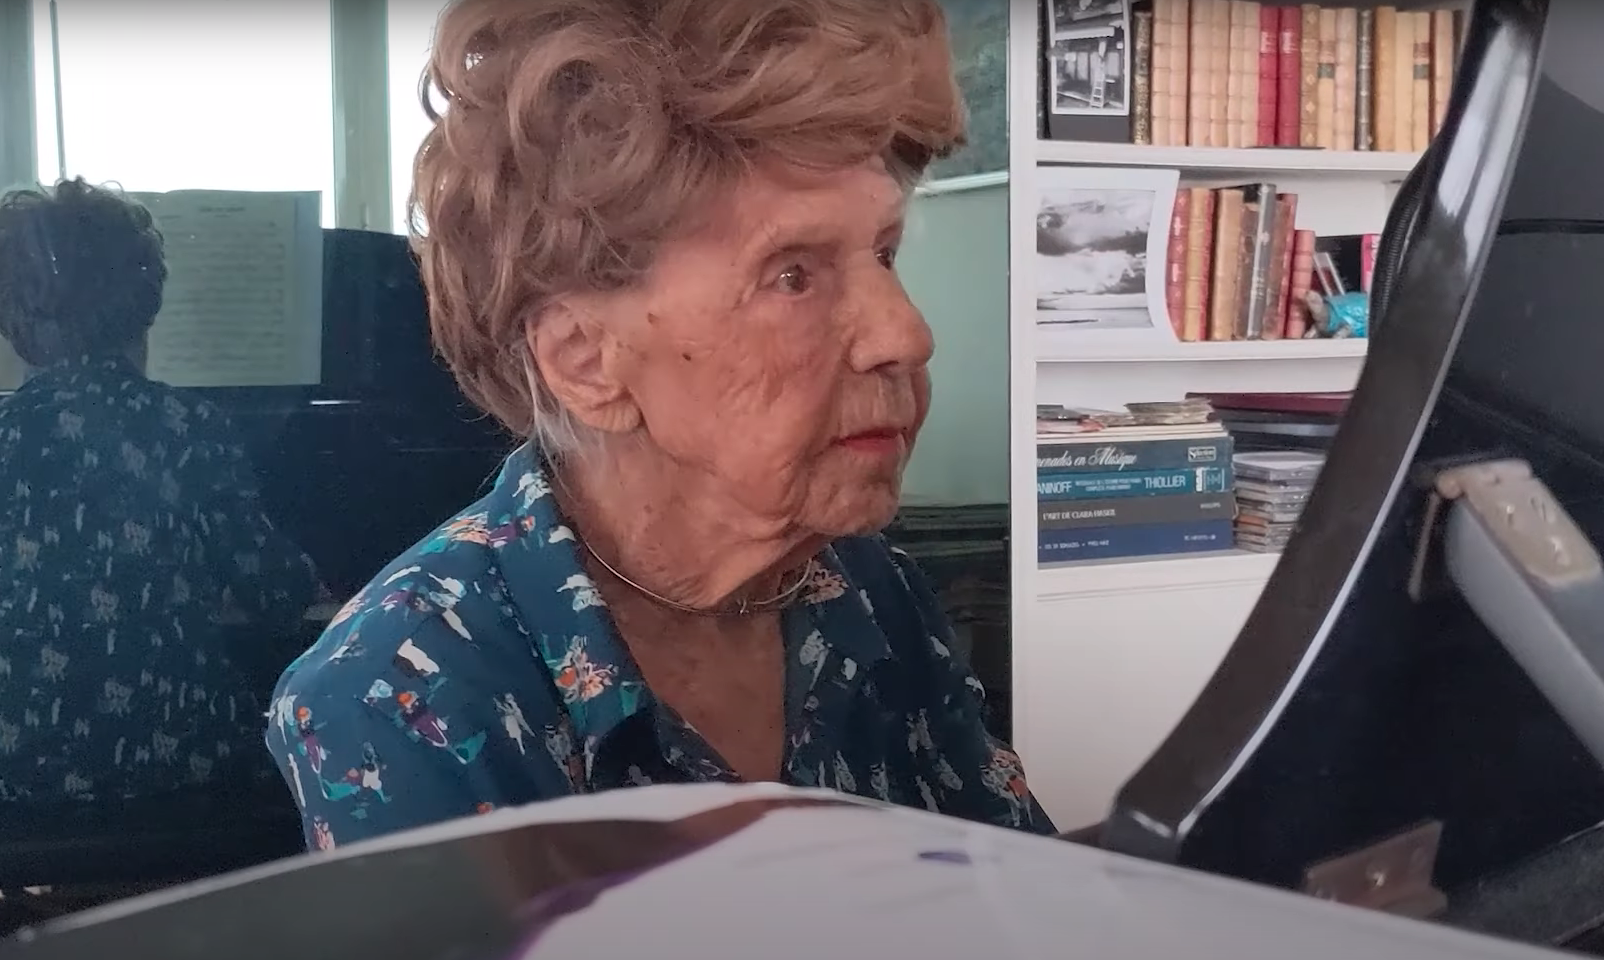 VÍDEO: A sus 106 años, Colette sigue poniendo música a su vida tocando el piano